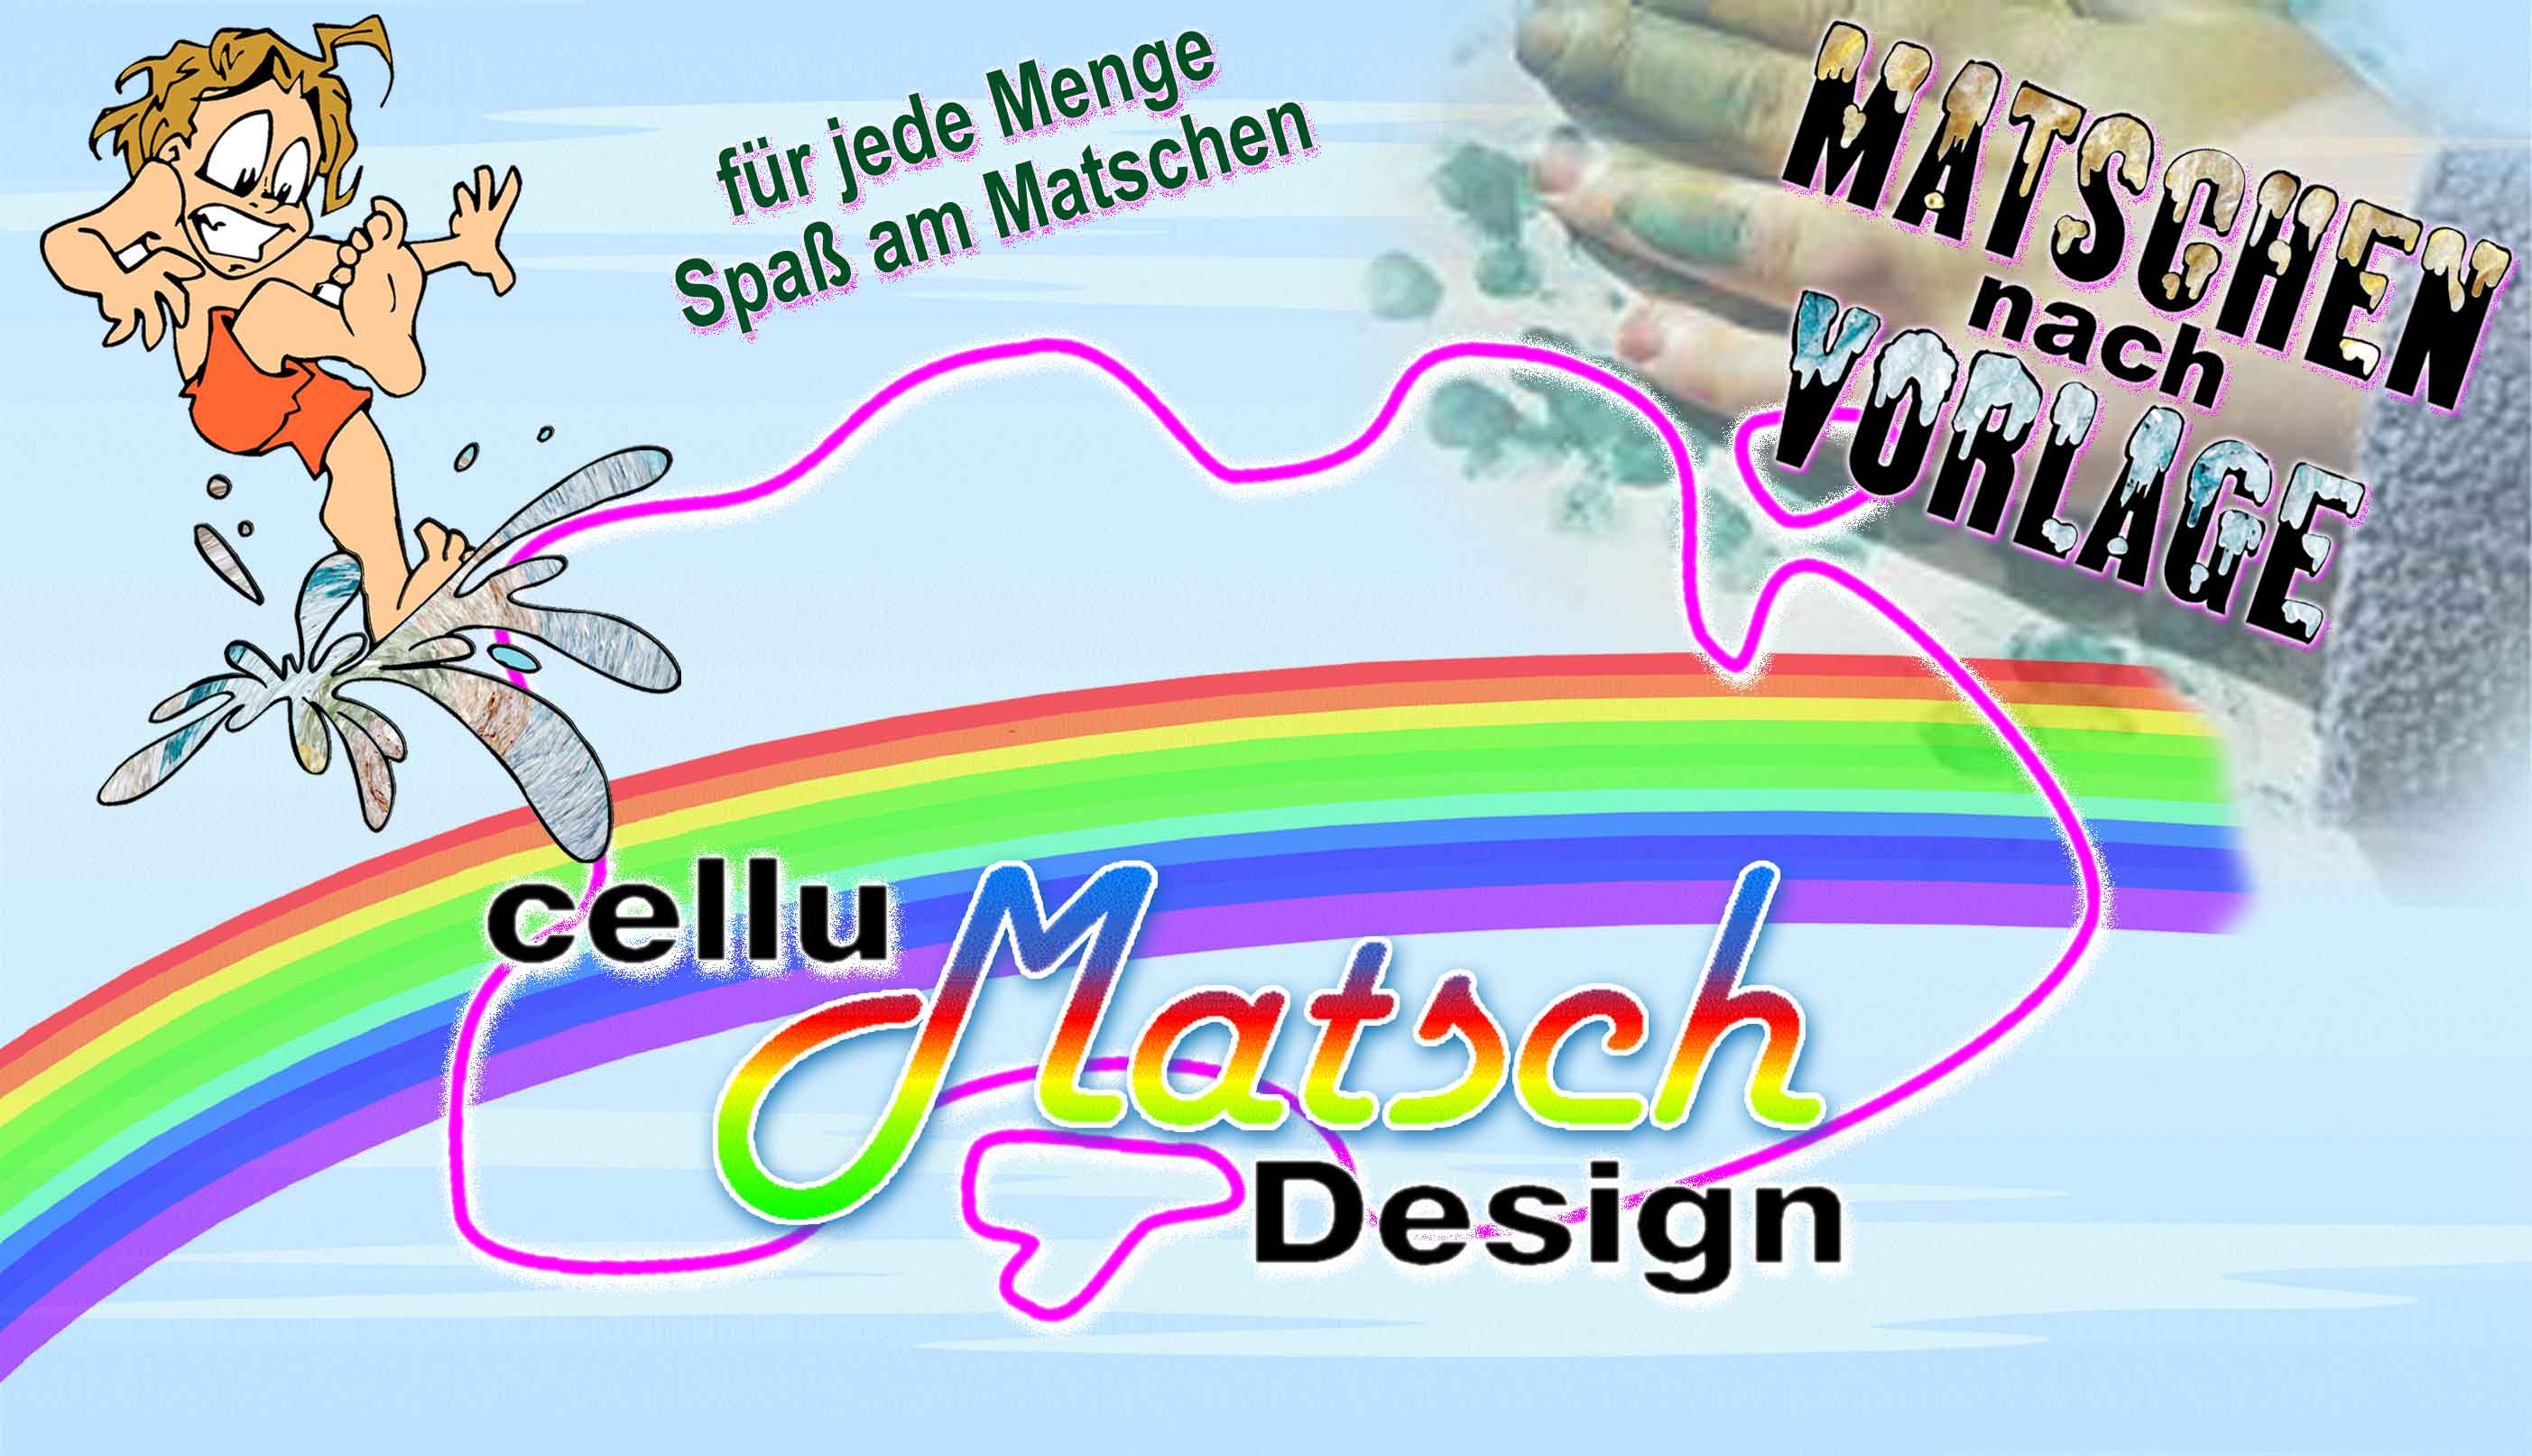 (c) Cellumatschdesign.de